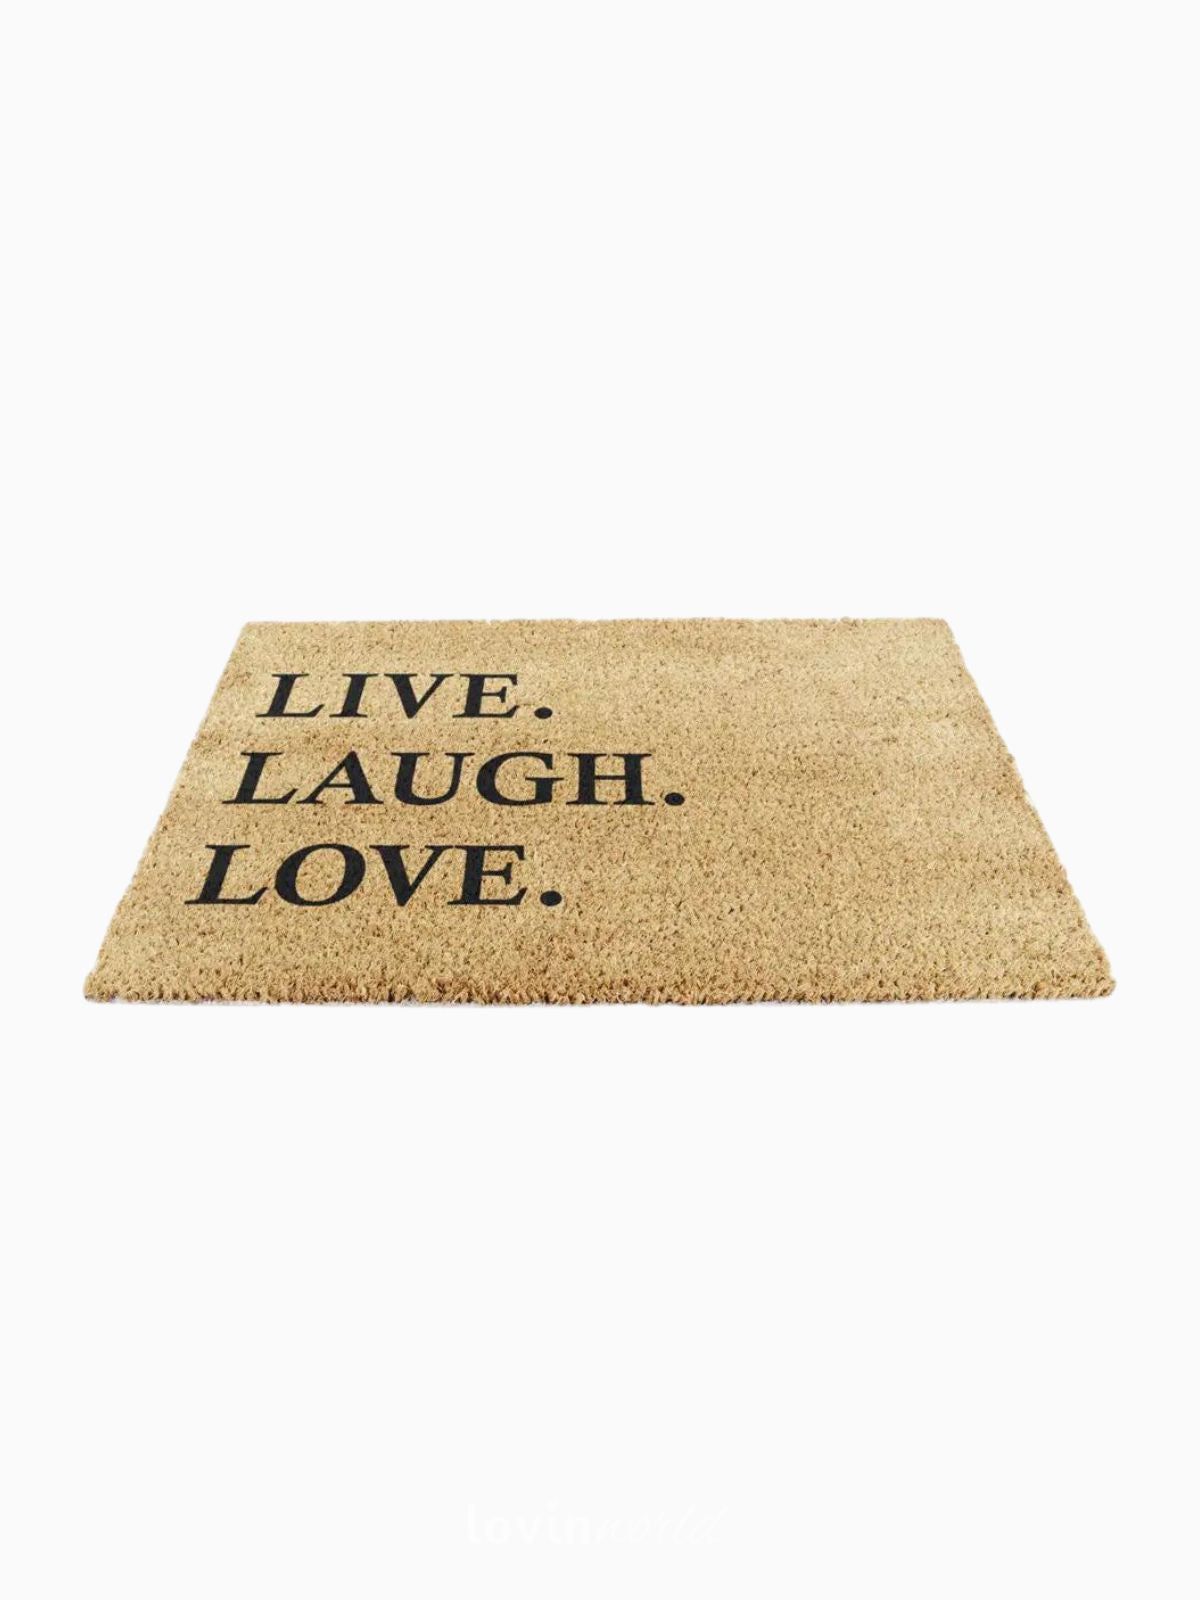 Zerbino Live Laugh Love, in fibra di cocco naturale 40x60 cm.-4